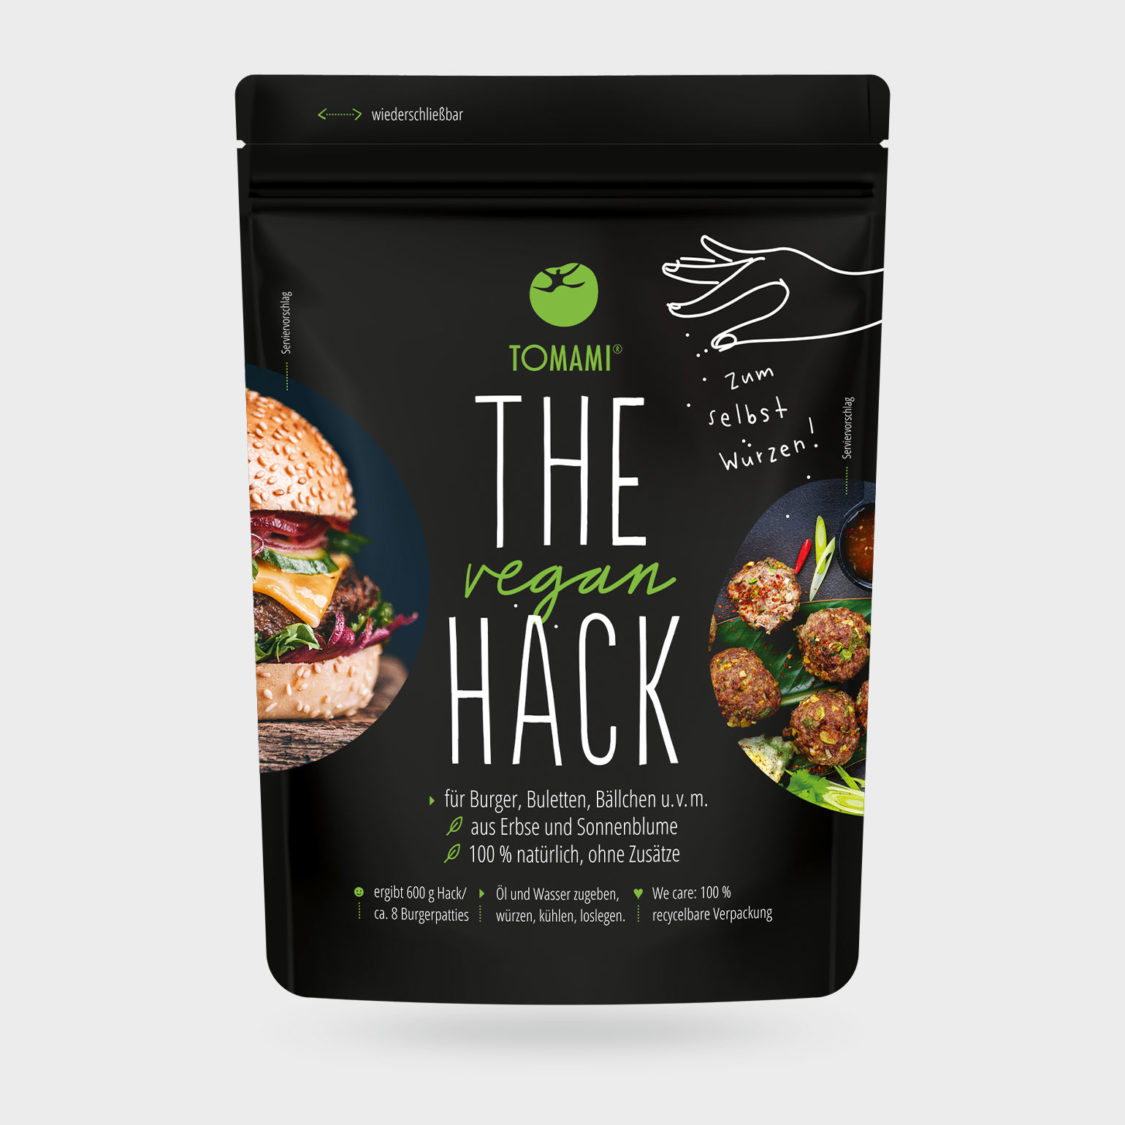 The Vegan Hack 200 g pack